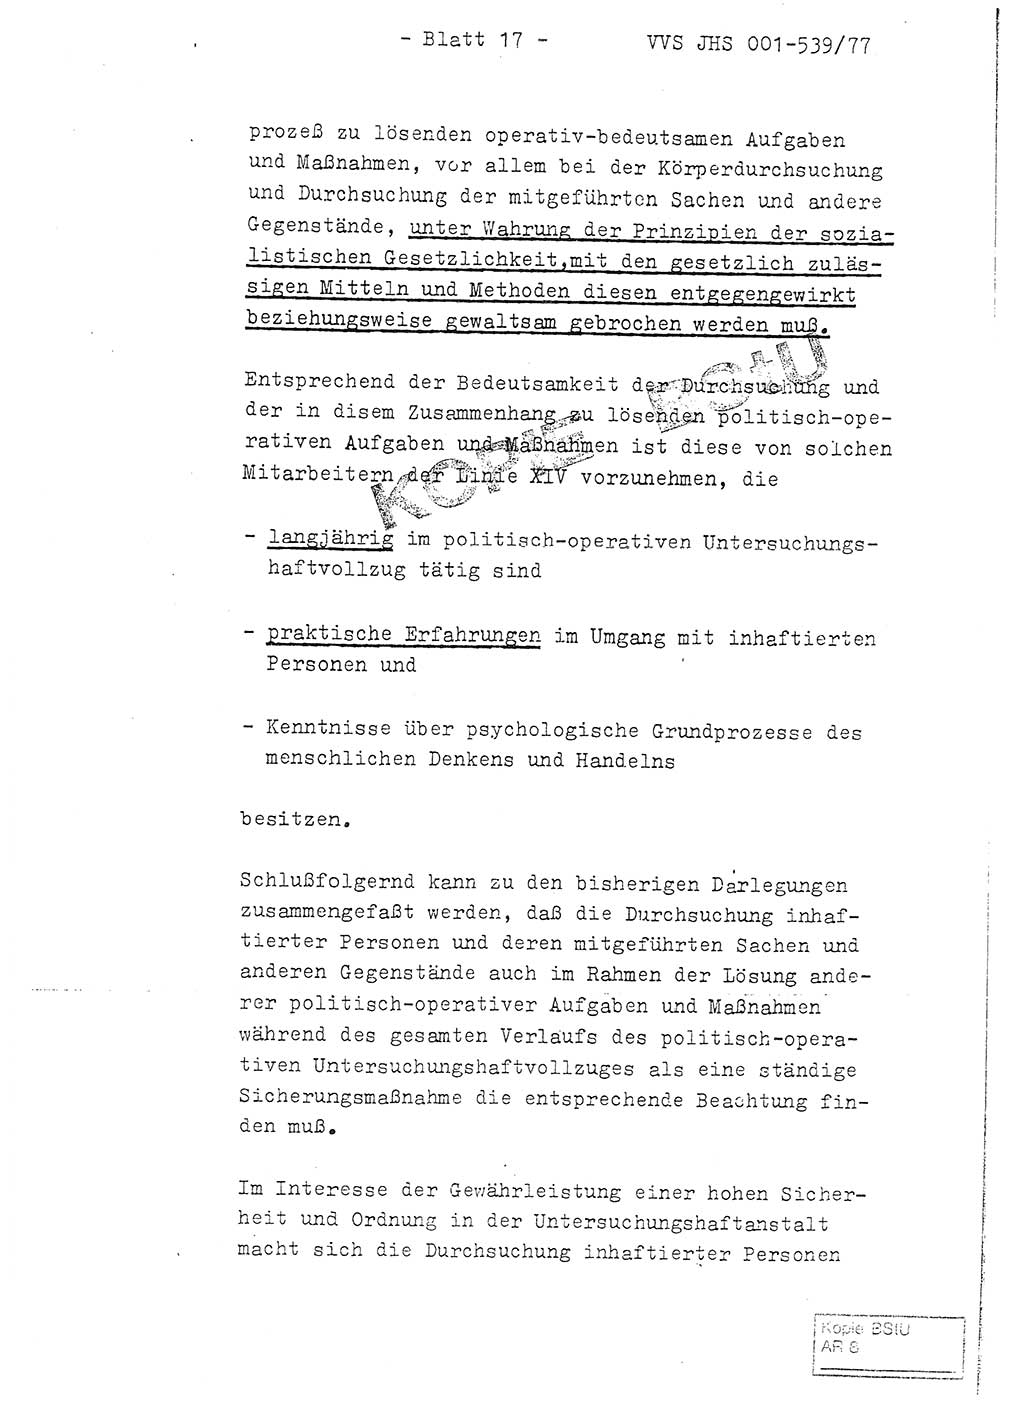 Fachschulabschlußarbeit Hauptmann Dietrich Jung (Abt. ⅩⅣ), Leutnant Klaus Klötzner (Abt. ⅩⅣ), Ministerium für Staatssicherheit (MfS) [Deutsche Demokratische Republik (DDR)], Juristische Hochschule (JHS), Vertrauliche Verschlußsache (VVS) 001-539/77, Potsdam 1978, Seite 17 (FS-Abschl.-Arb. MfS DDR JHS VVS 001-539/77 1978, S. 17)